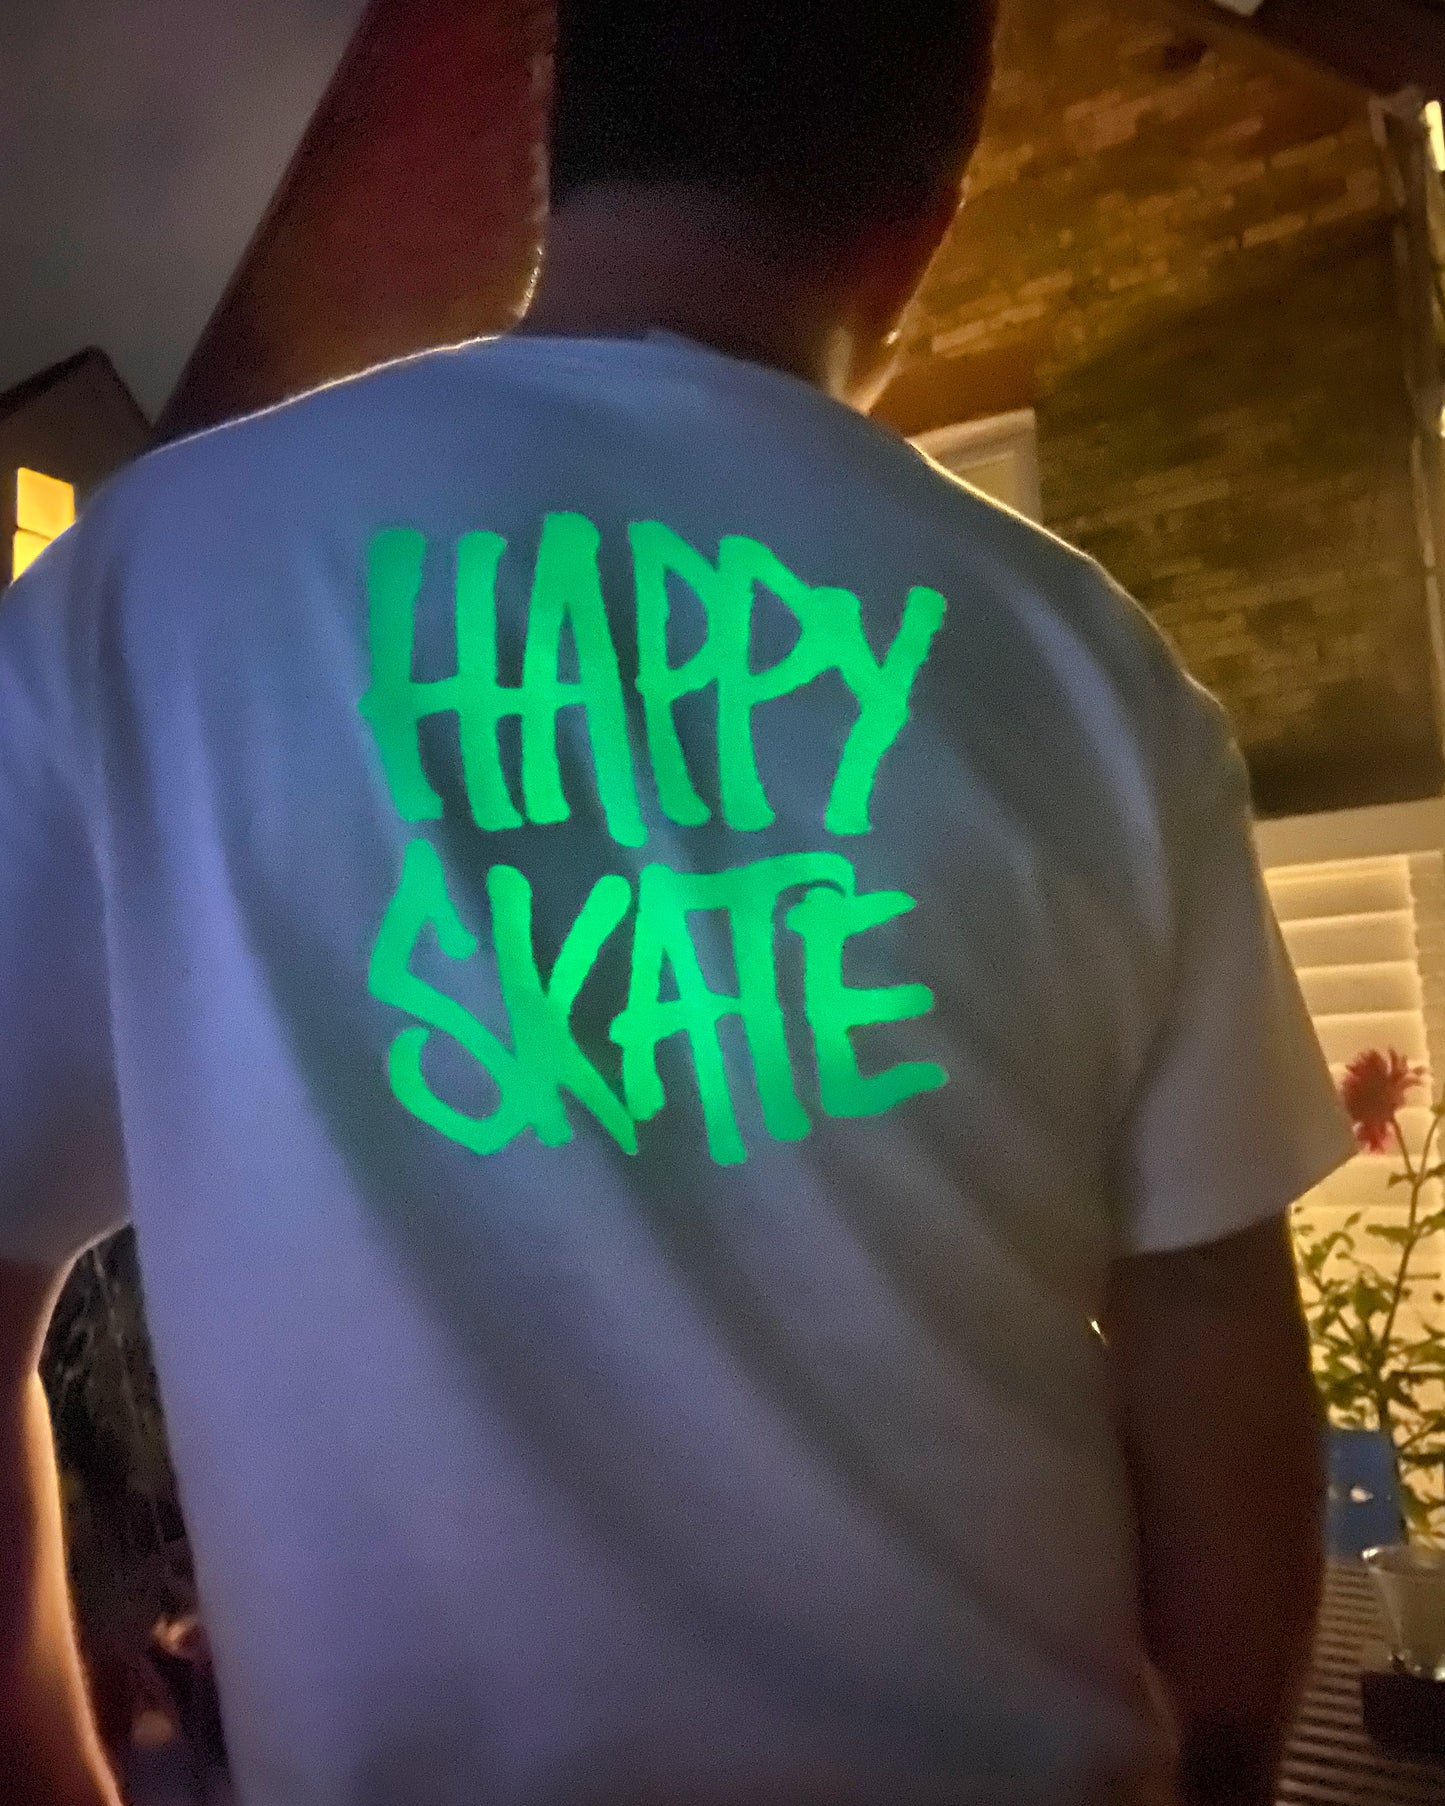 Happy Skate Glow In The Dark Tee